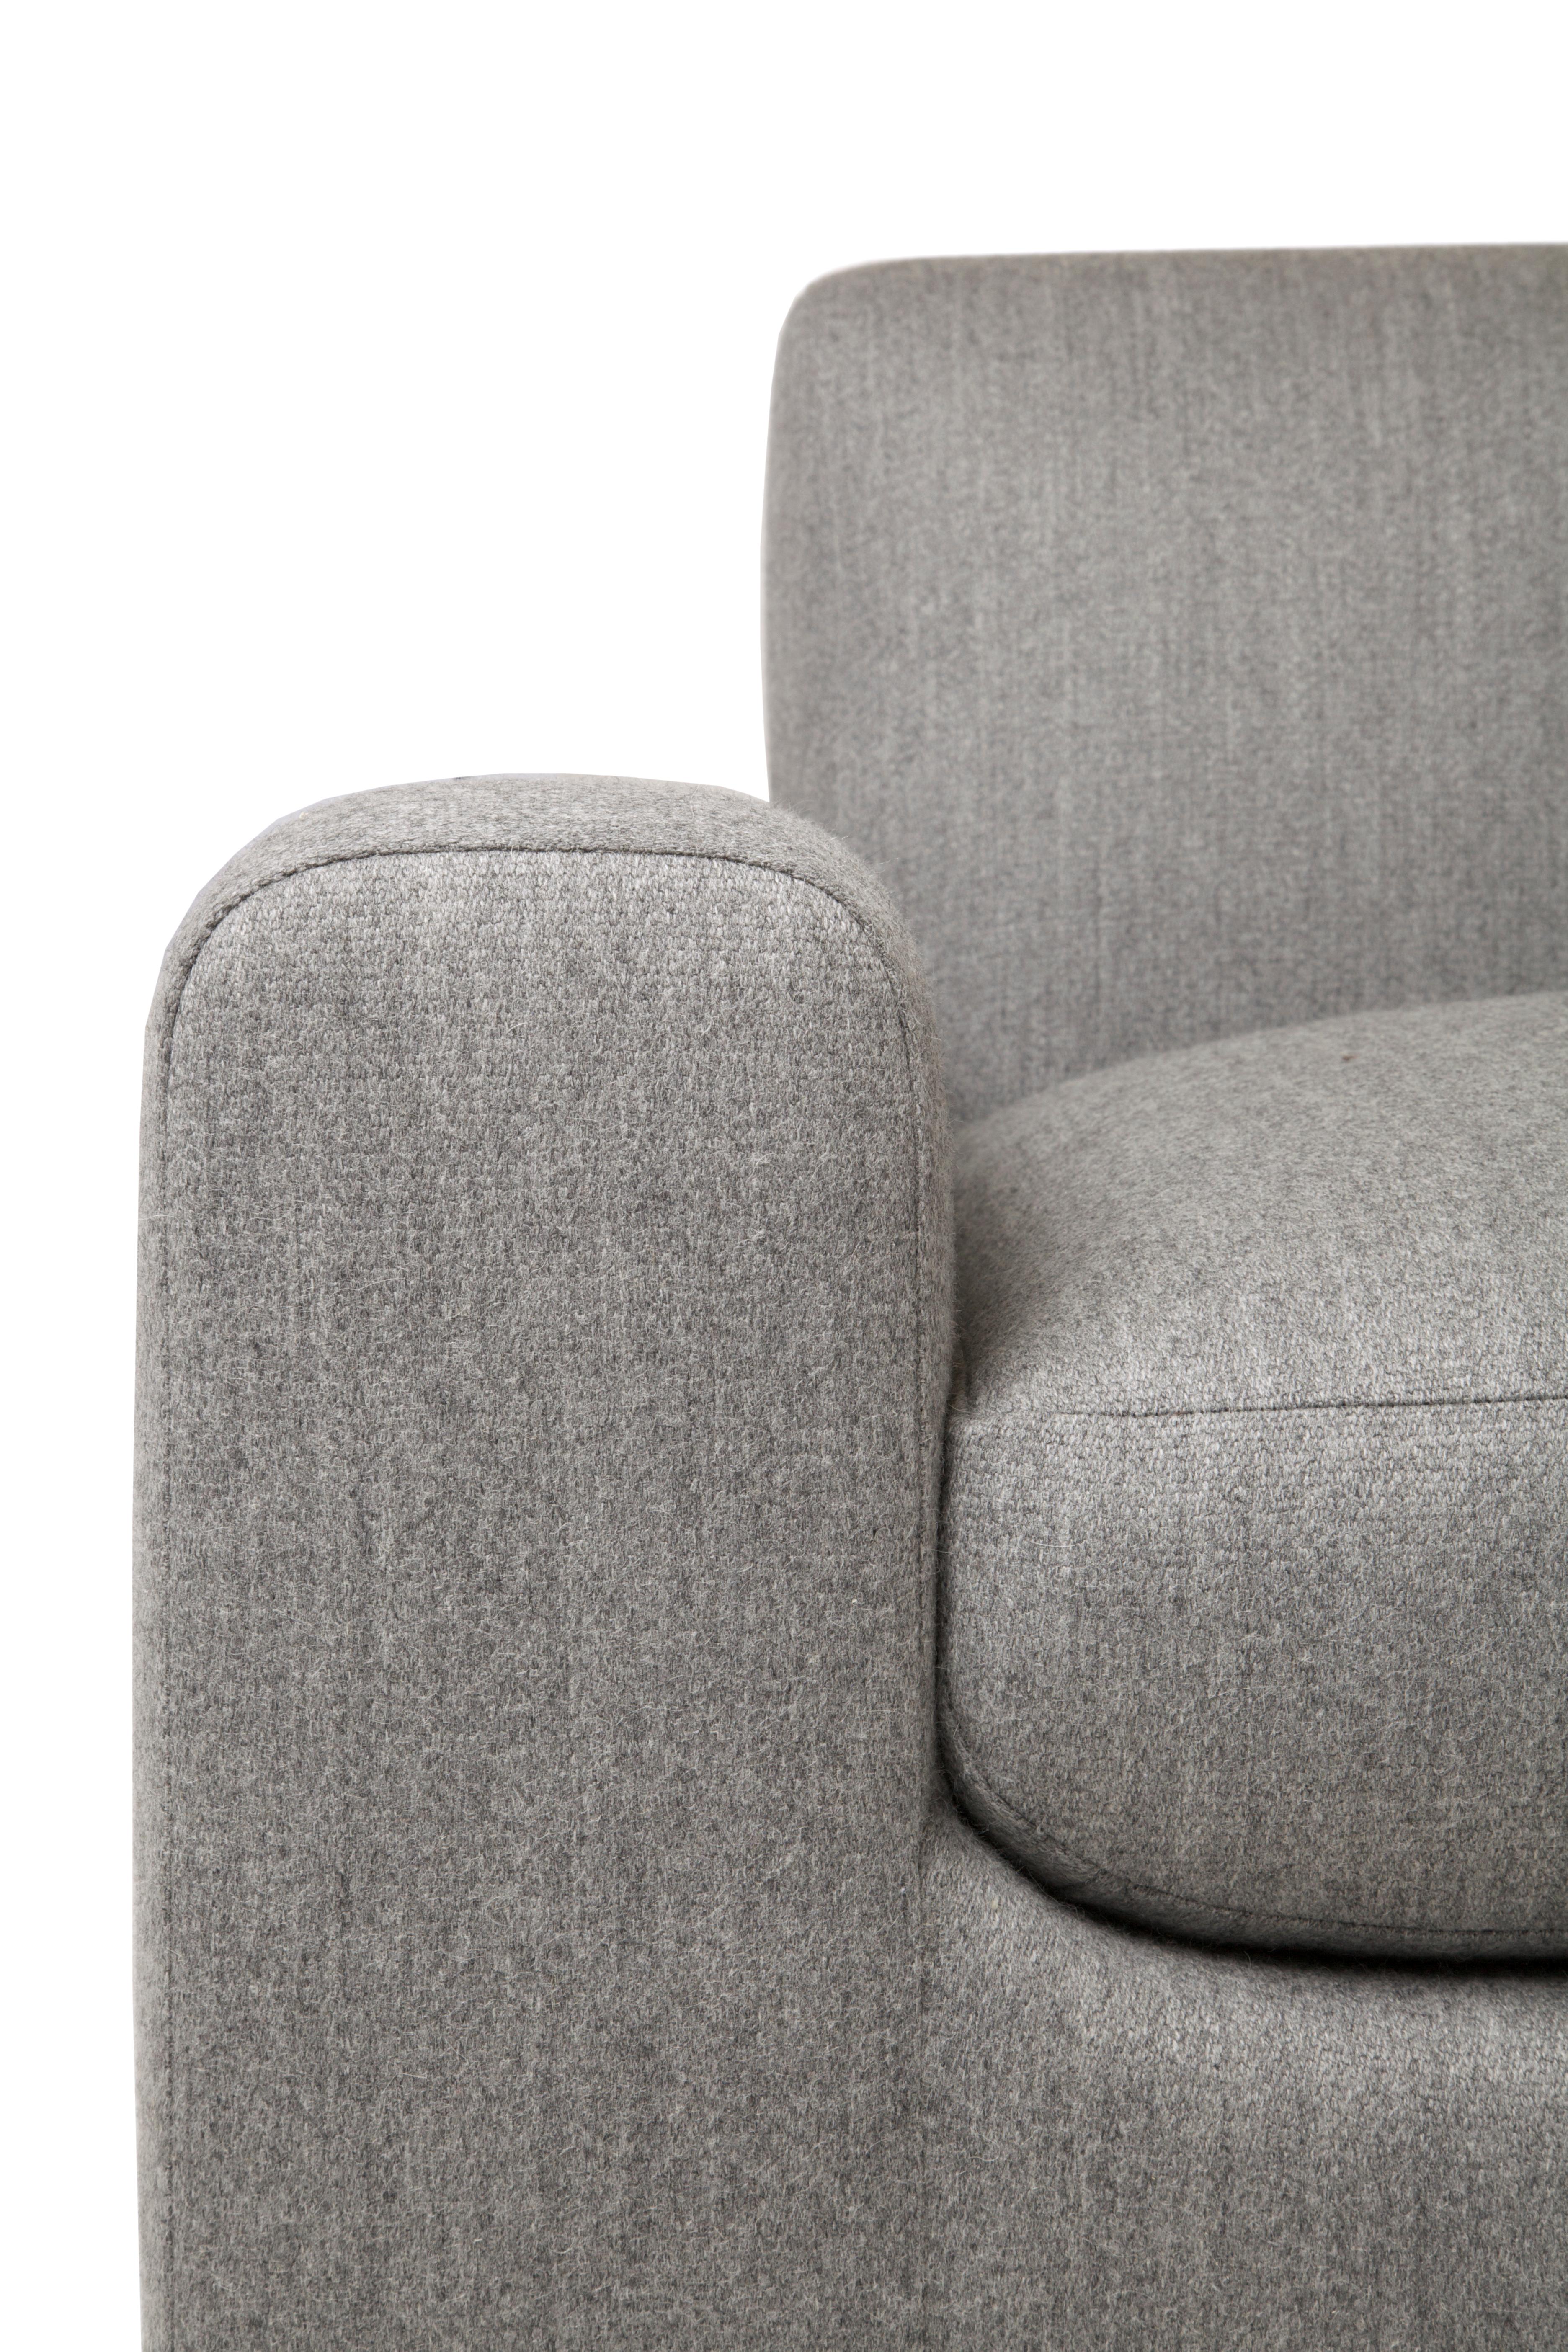 Cette chaise sexy et nostalgique est sensuellement moderne avec des courbes bien définies mais pas exagérées qui crient la folie vintage. Le minimalisme subtil et discret est un hommage à l'âge d'or du design du milieu du XXe siècle, où la